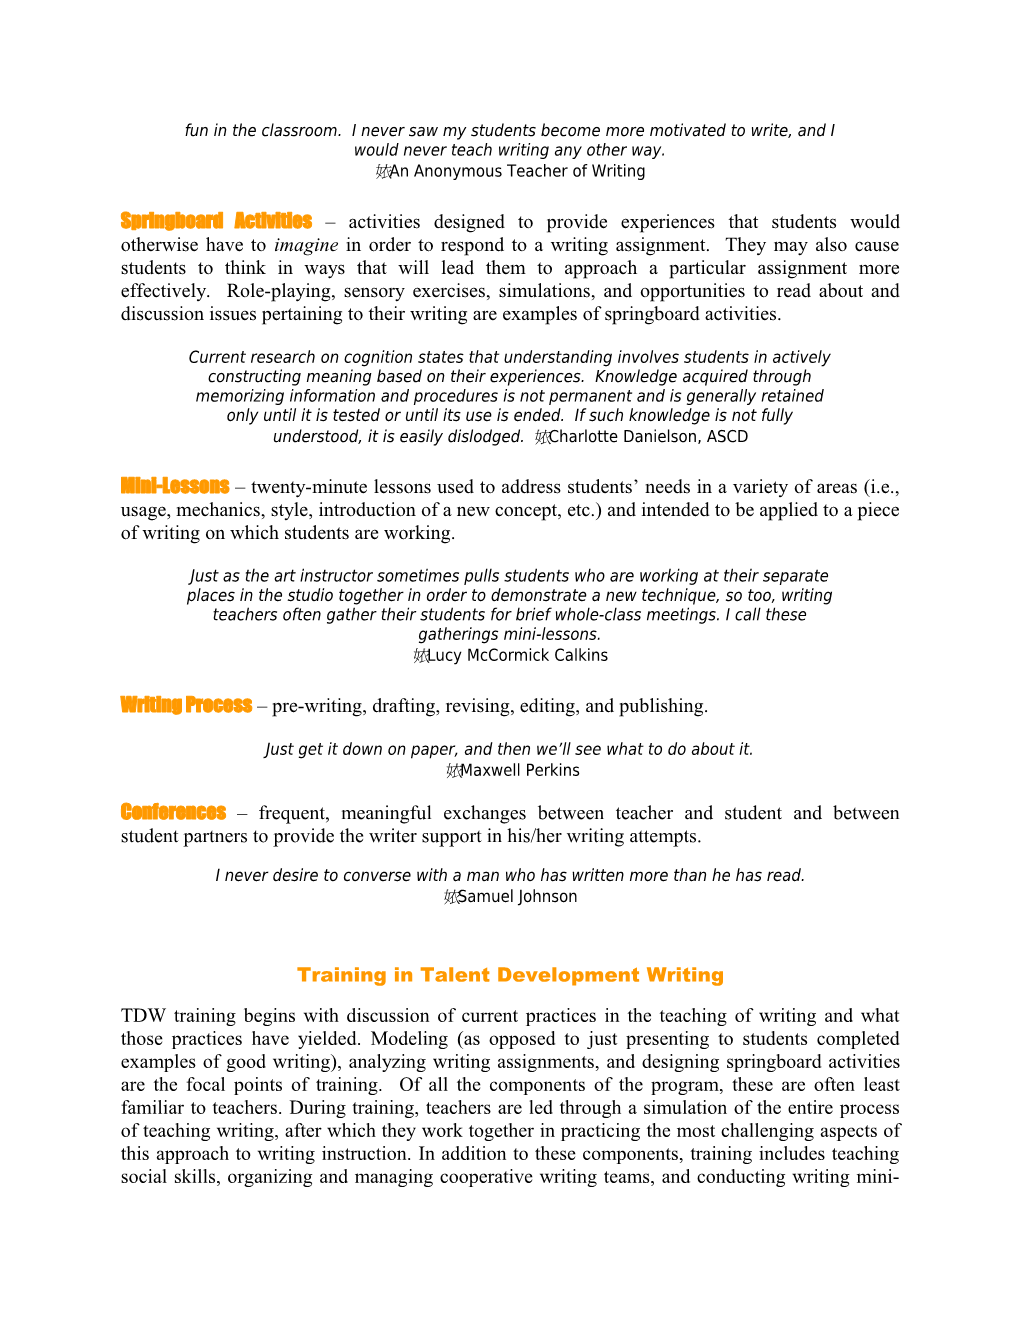 Talent Development Writing Activities in Brief